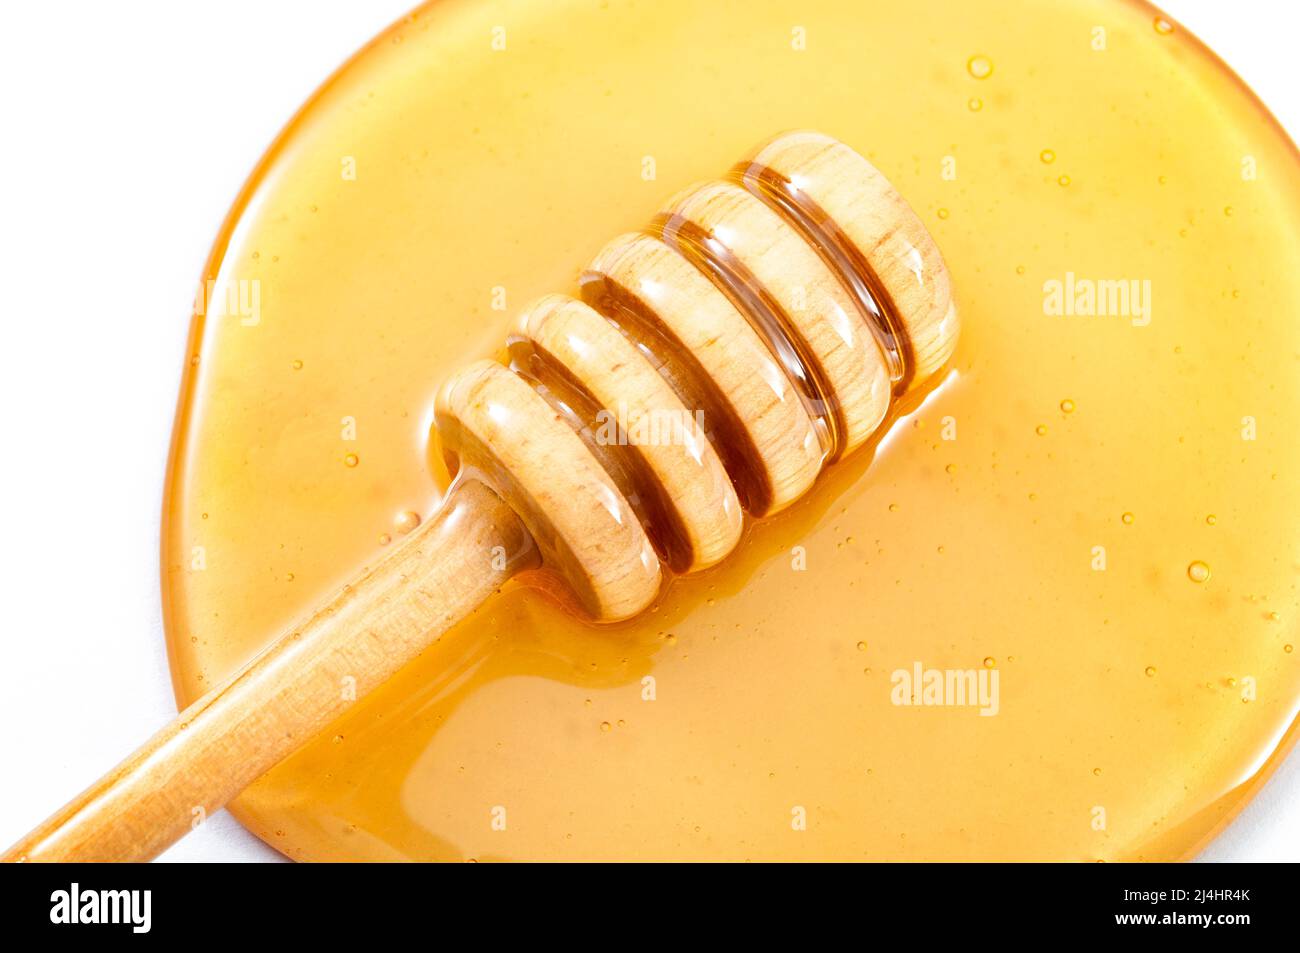 Gros plan sur le miel qui s'égoutte du balancier dans une piscine de miel jaune doux isolée sur blanc Banque D'Images